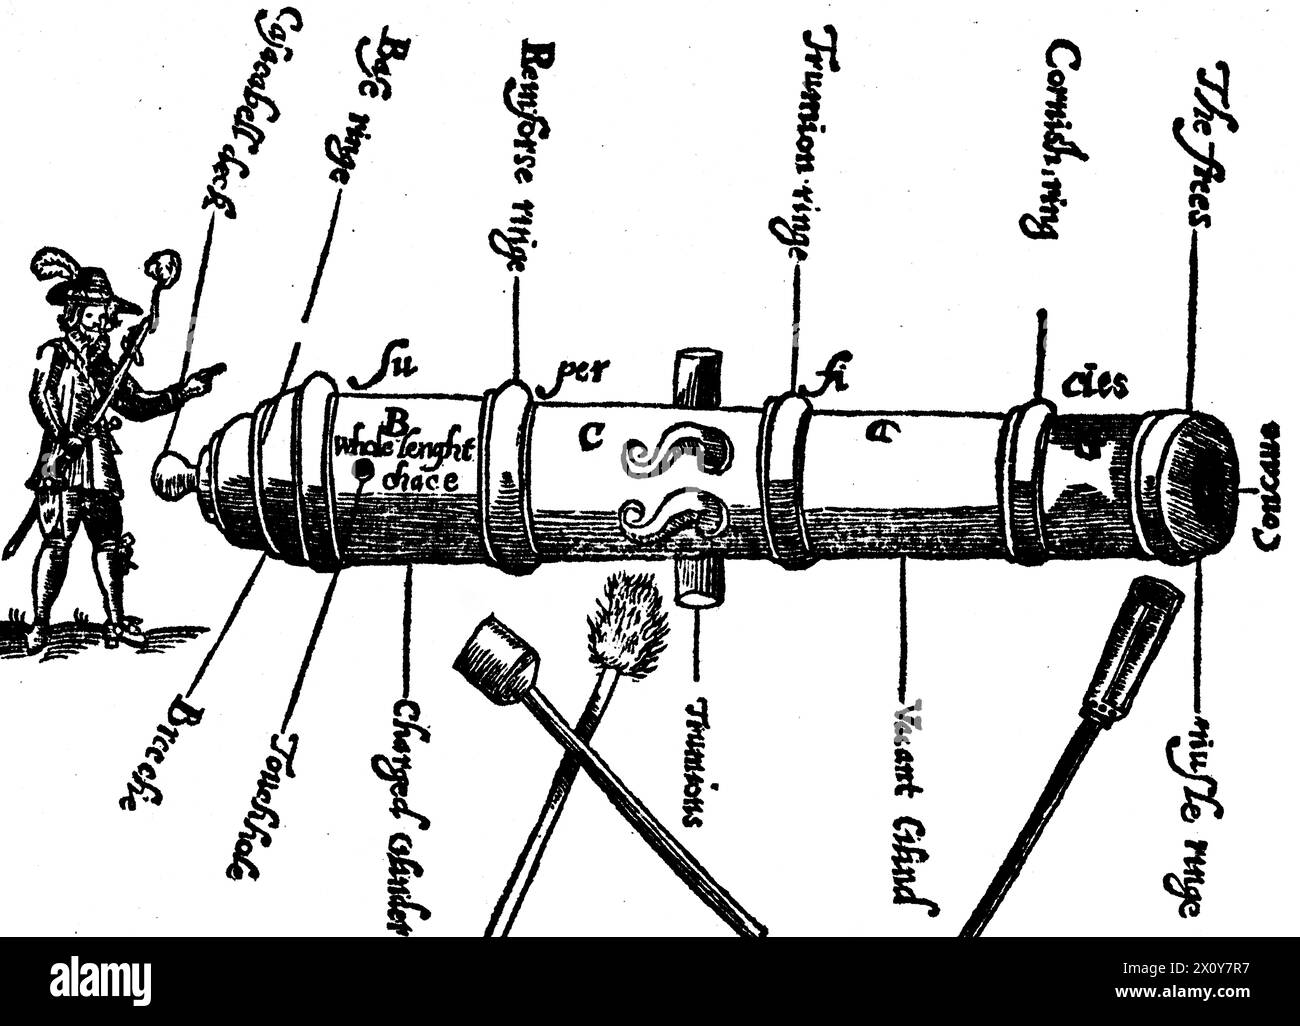 Eine Kanone aus dem 17. Jahrhundert, von der Frontispiece bis zu John Roberts’ „The Compleat Canonier“, 1652. Der Compleat Canonier beschreibt die Kunst des Gunner während des englischen Bürgerkriegs. Stockfoto